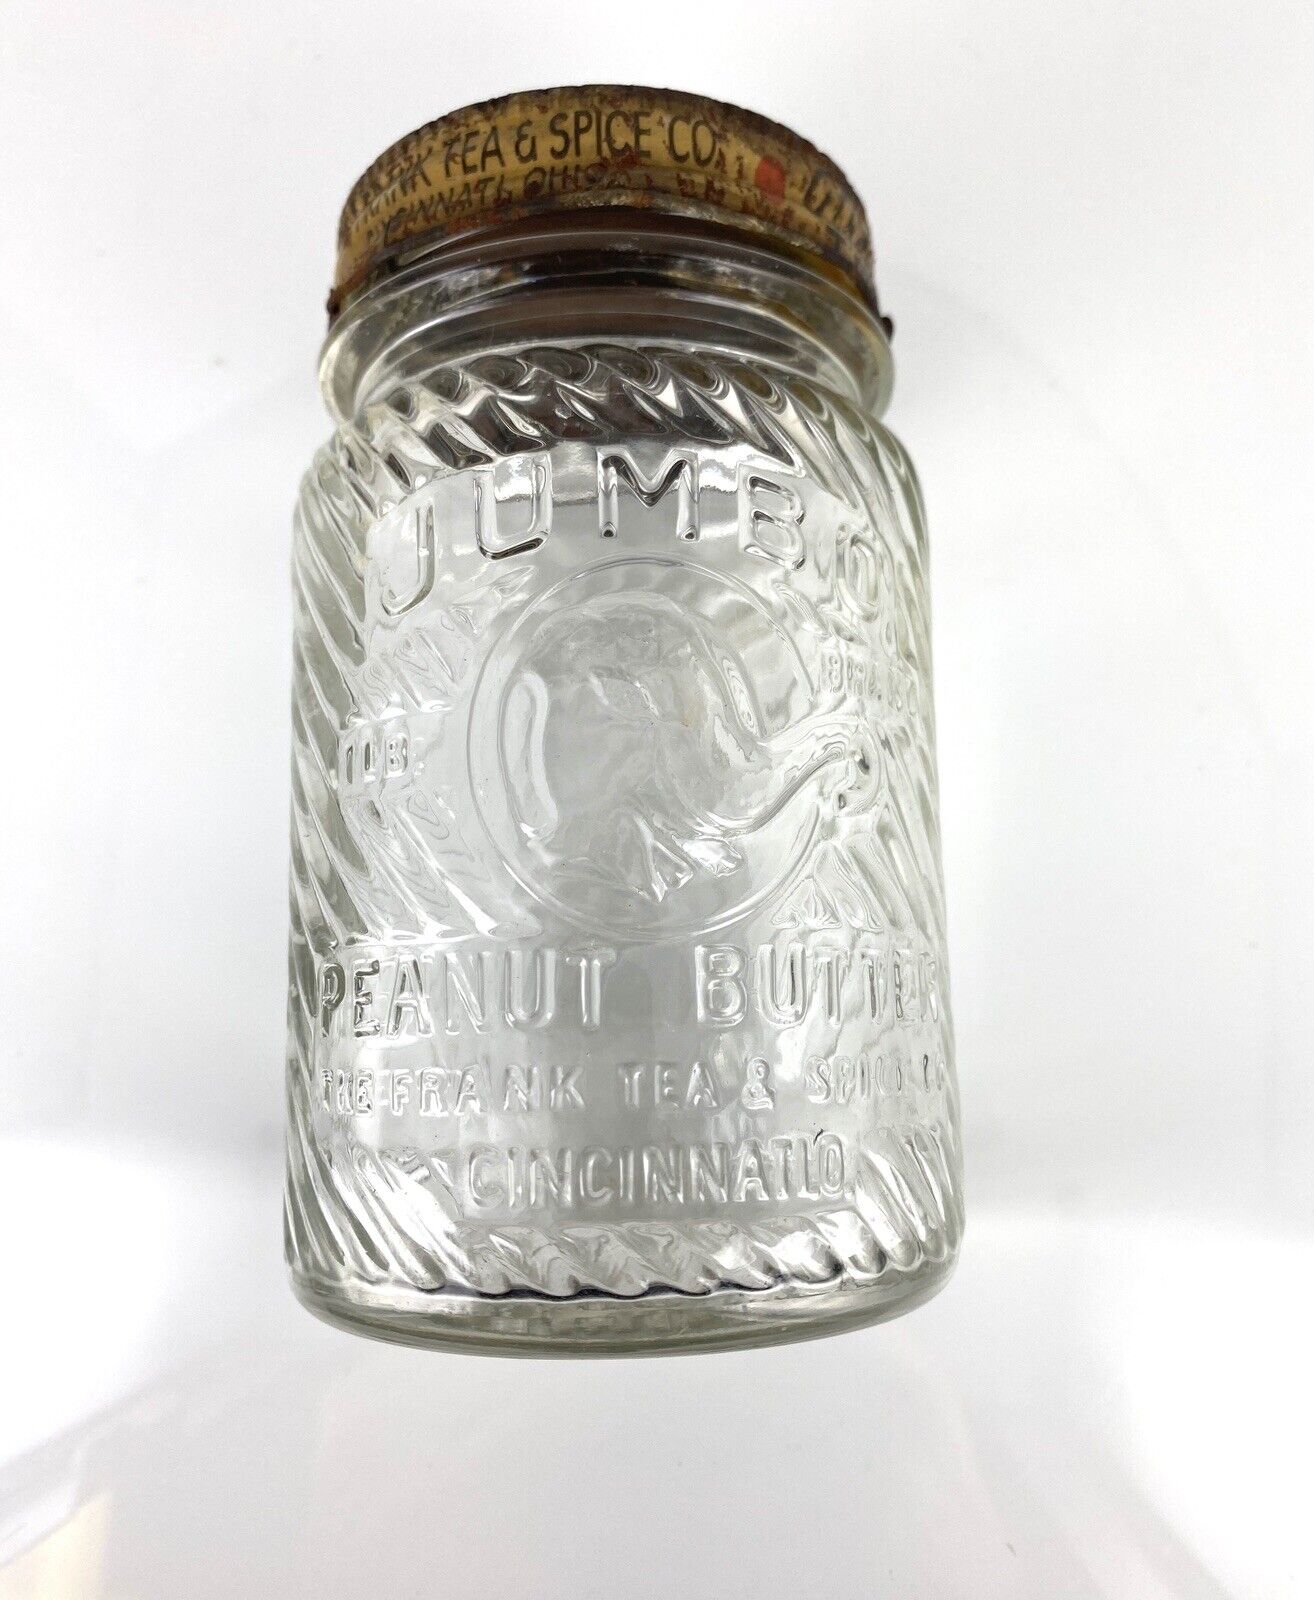 JUMBO PEANUT BUTTER JAR WITH ORIGINAL LID 1lb Frank Tea & Spice Co. Cincinnati